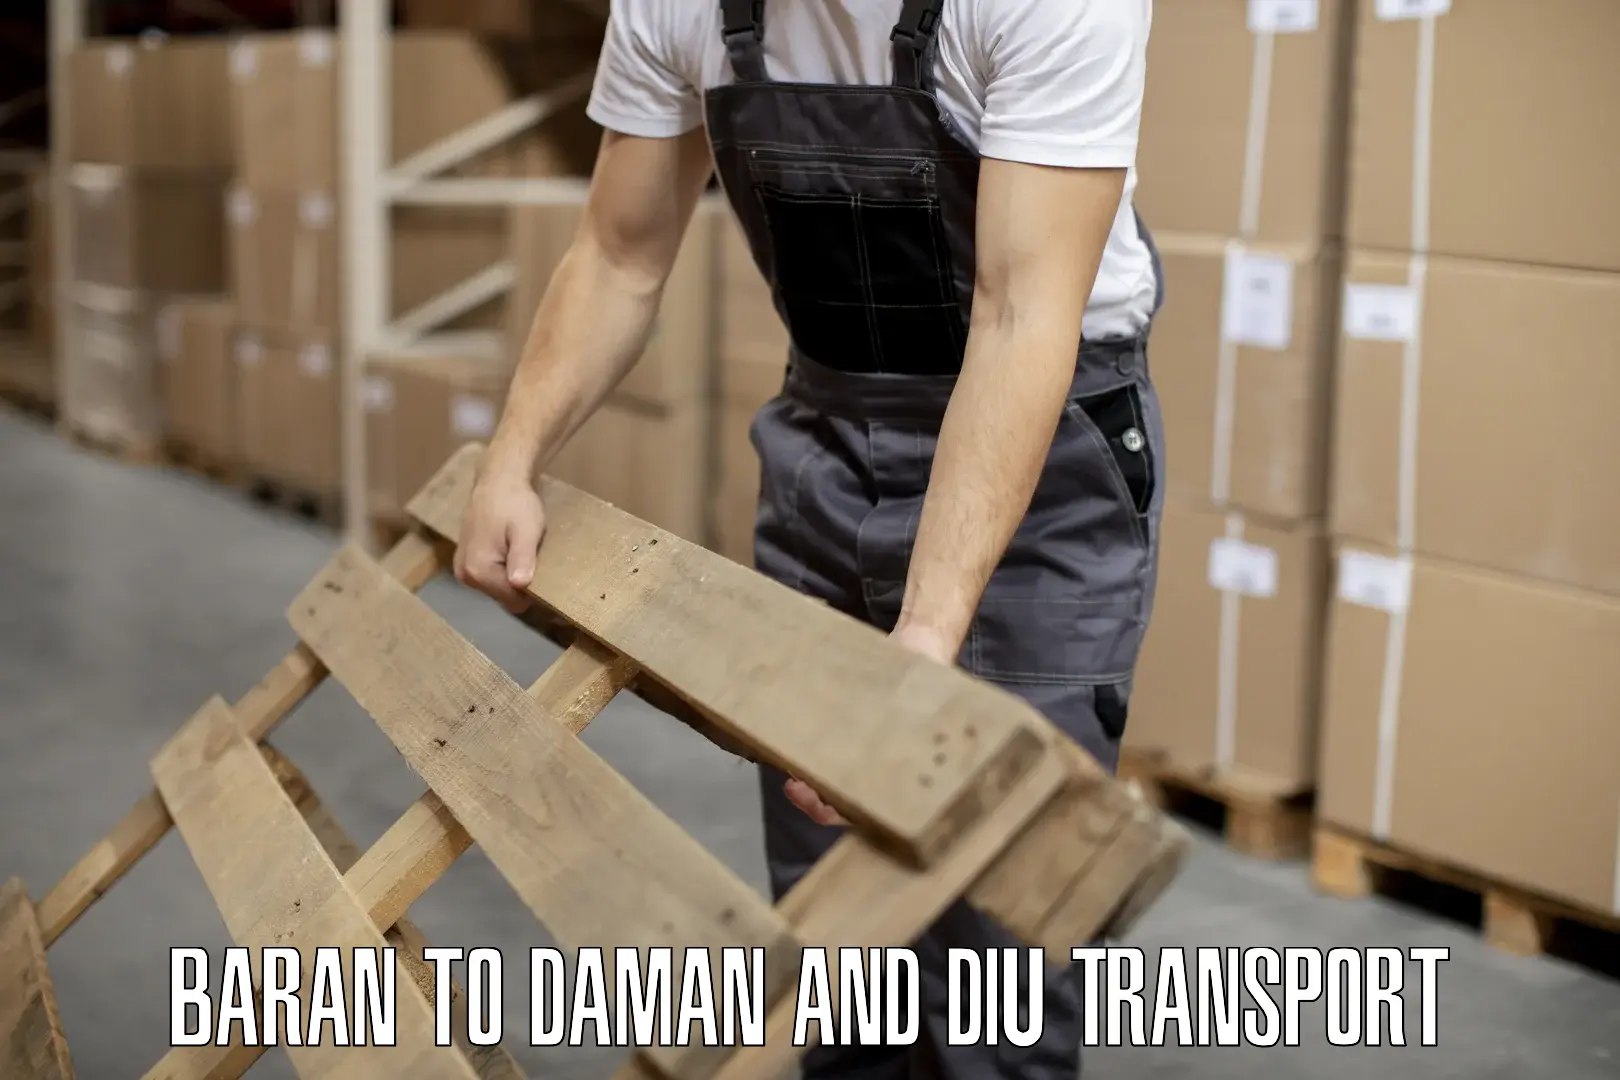 Vehicle transport services Baran to Daman and Diu